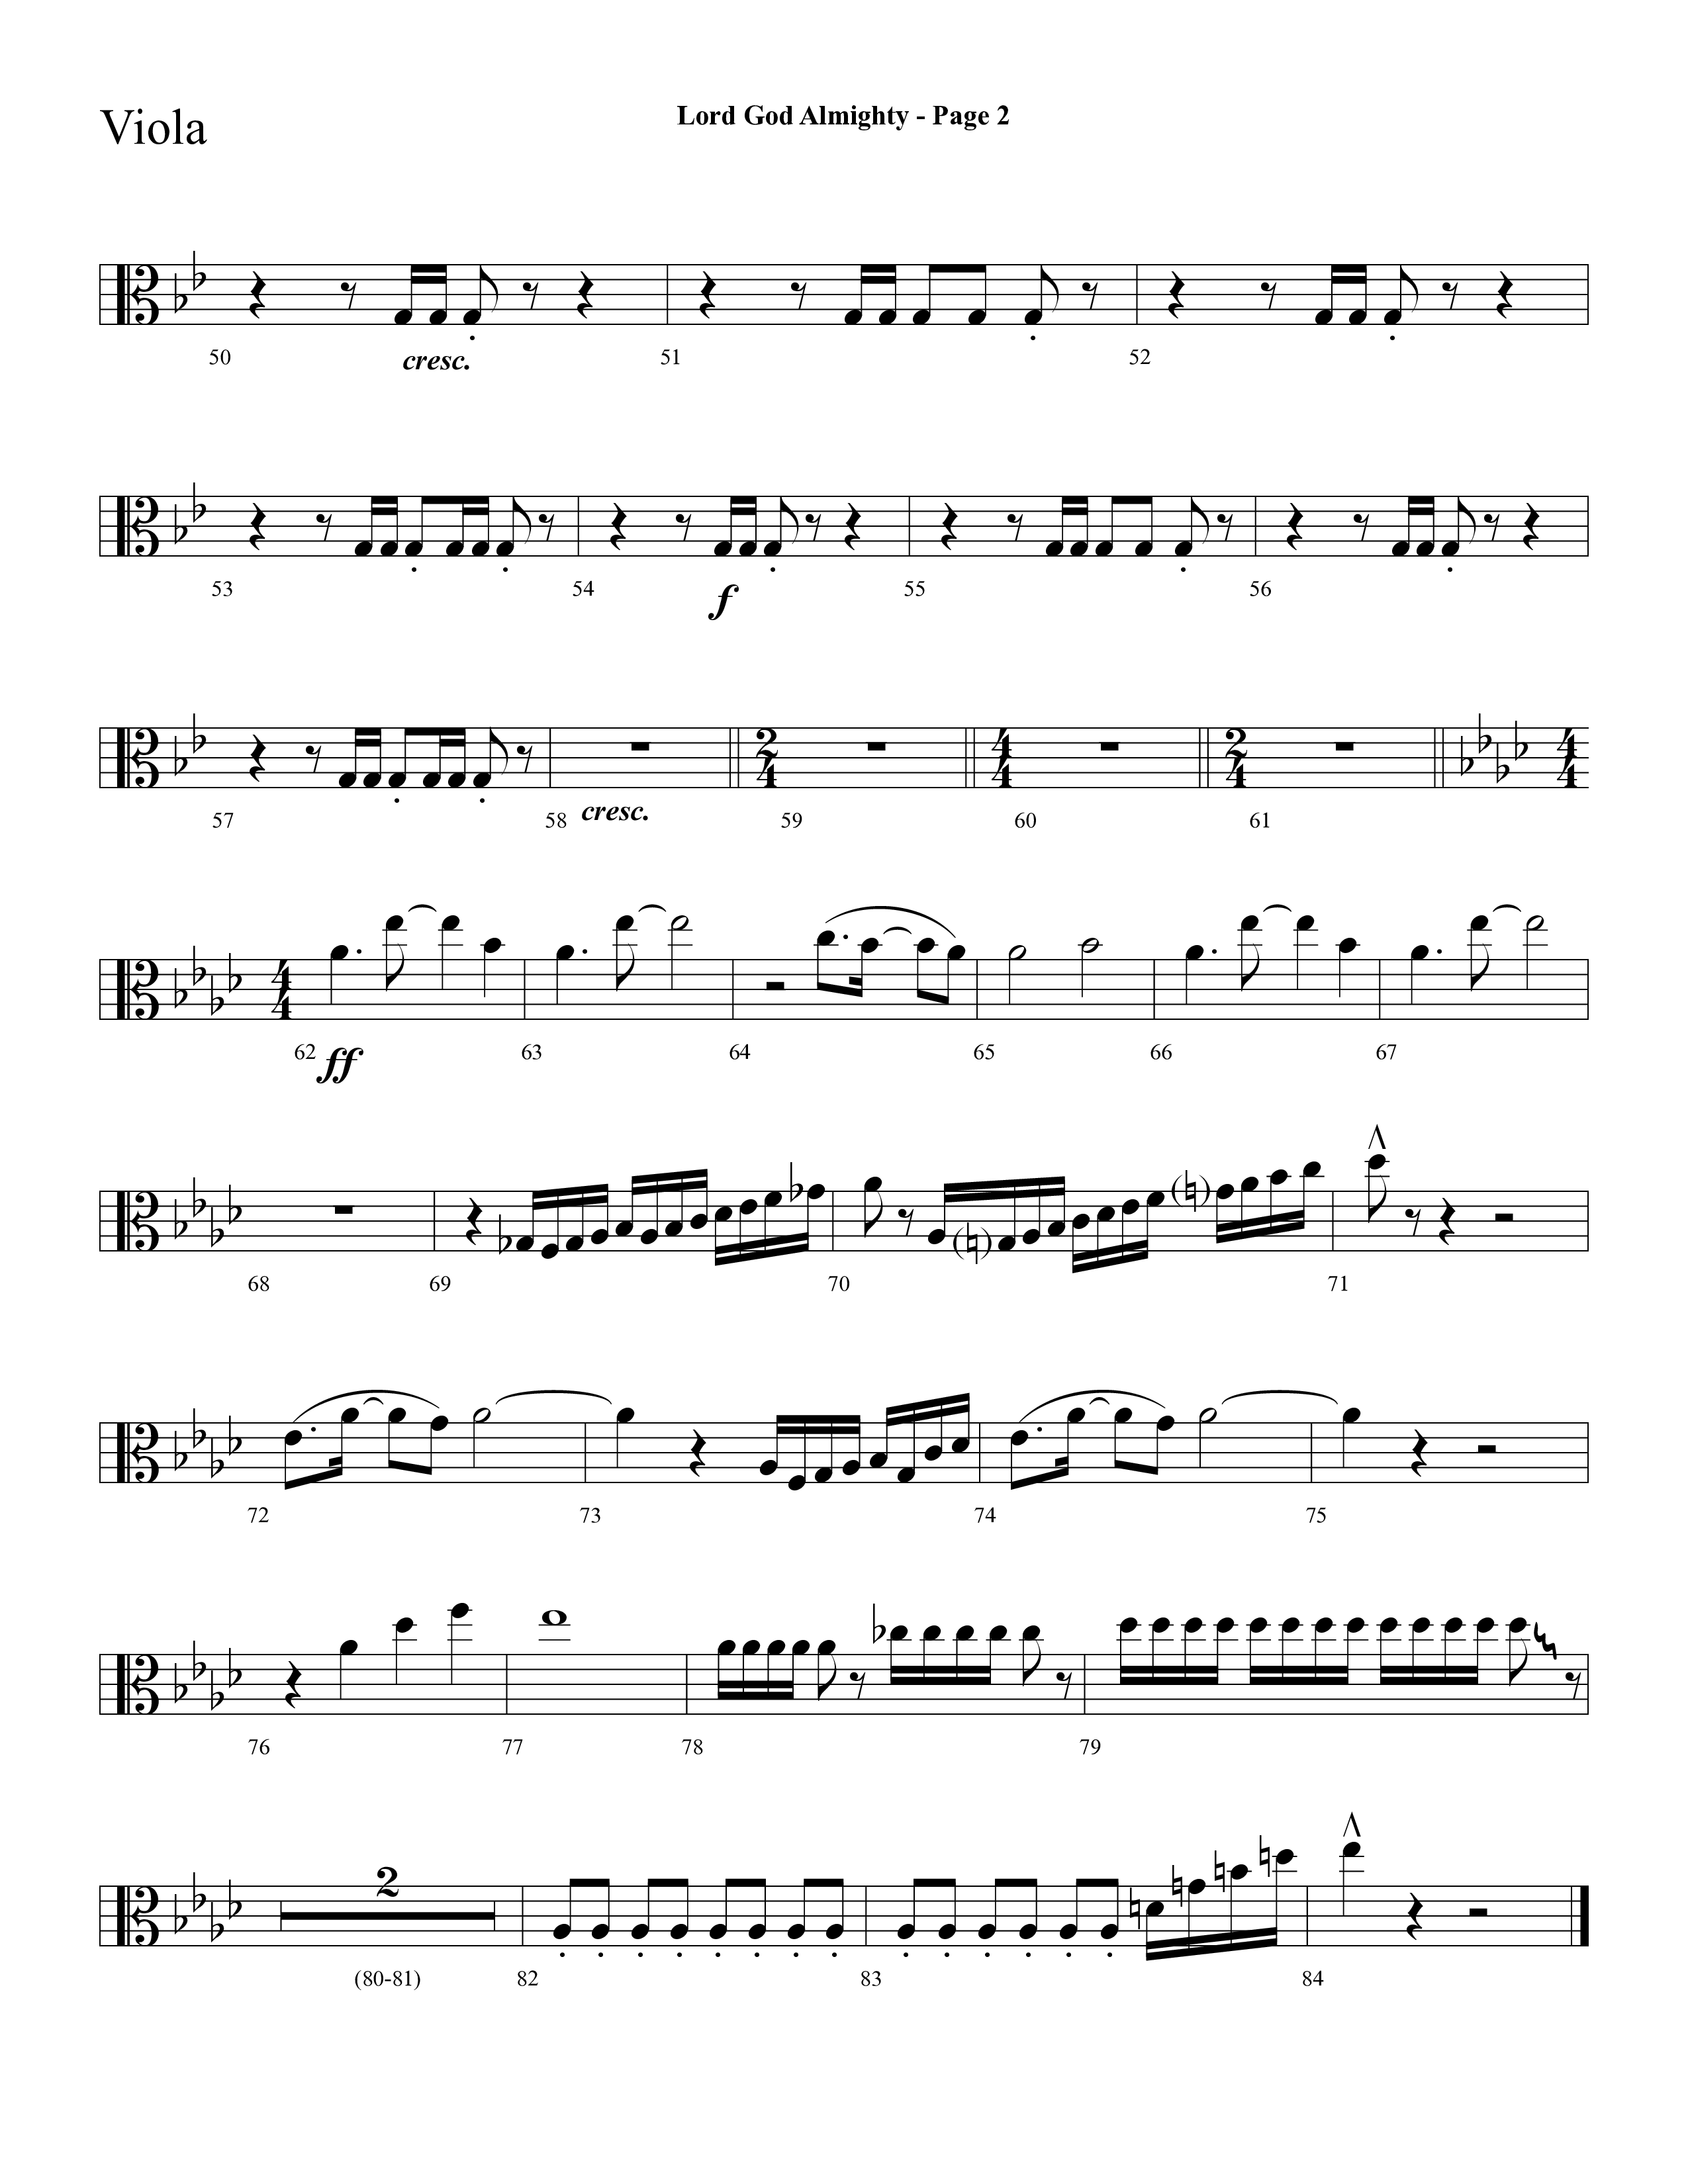 Lord God Almighty (Choral Anthem SATB) Viola (Lifeway Choral / Arr. Dave Williamson)